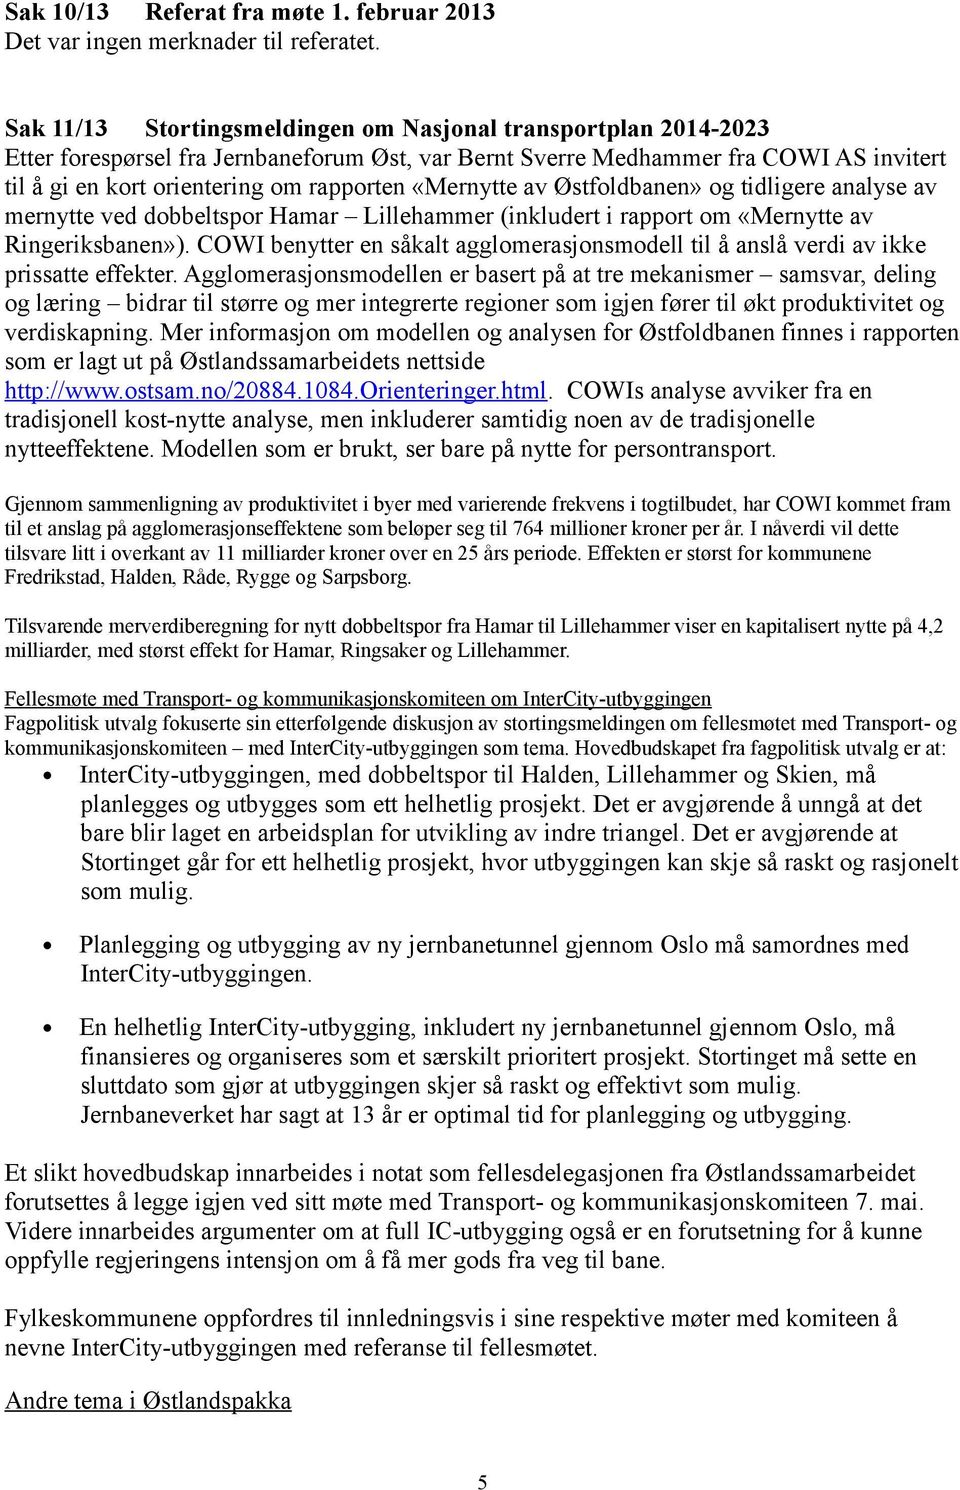 «Mernytte av Østfoldbanen» og tidligere analyse av mernytte ved dobbeltspor Hamar Lillehammer (inkludert i rapport om «Mernytte av Ringeriksbanen»).